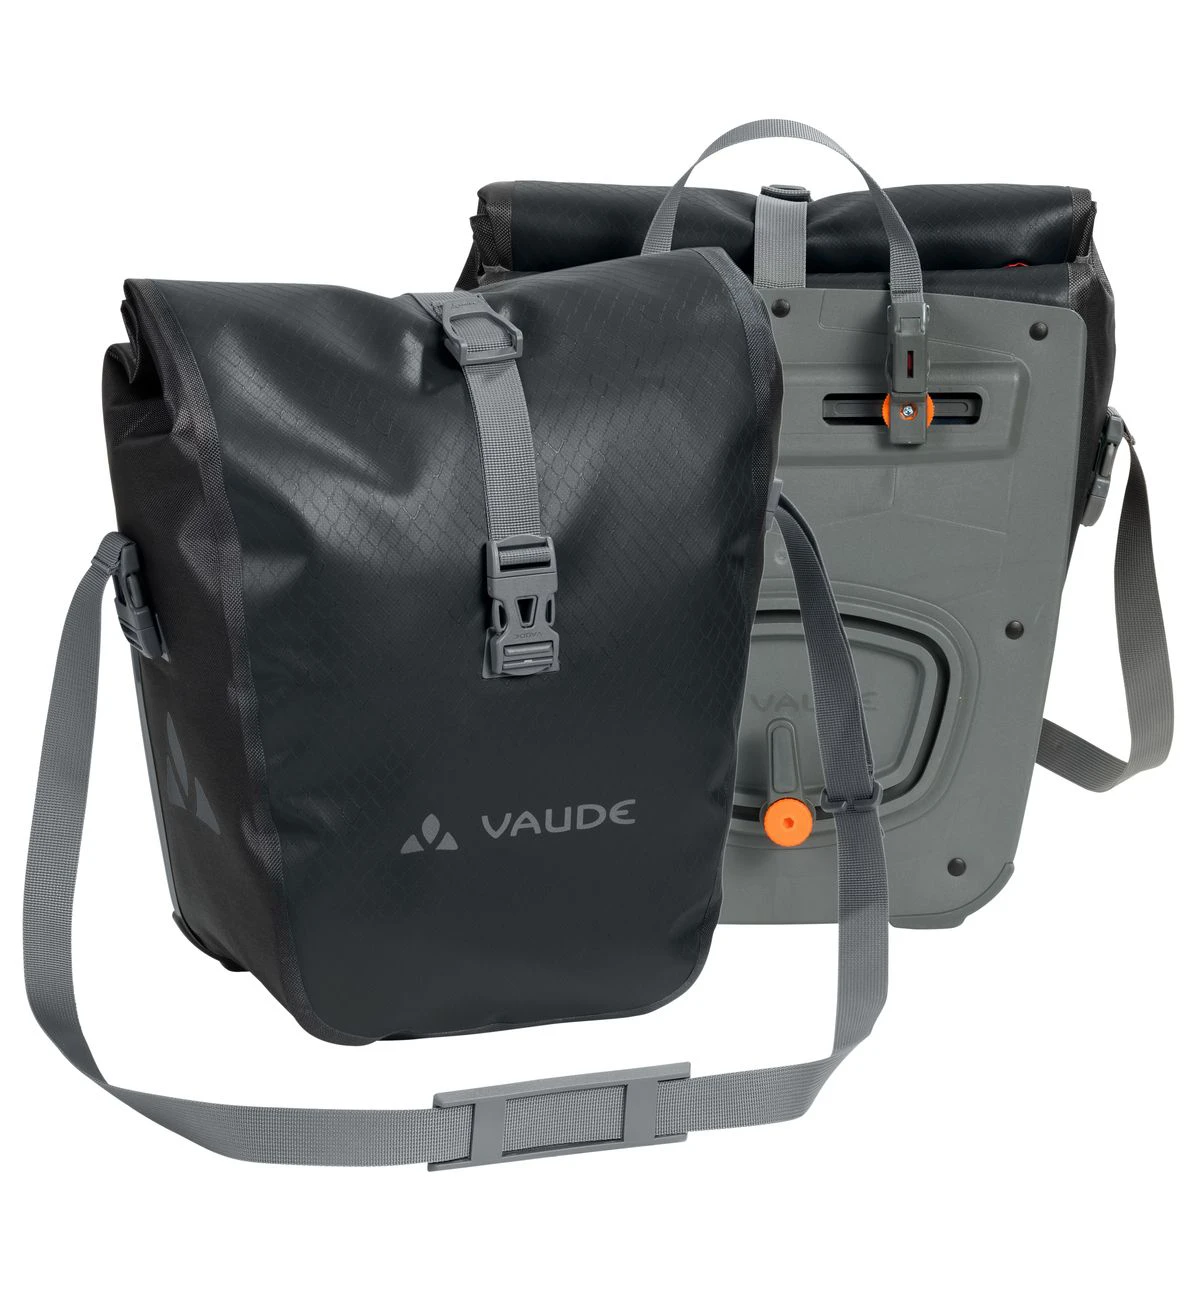 Vaude - Tasche Aqua front black